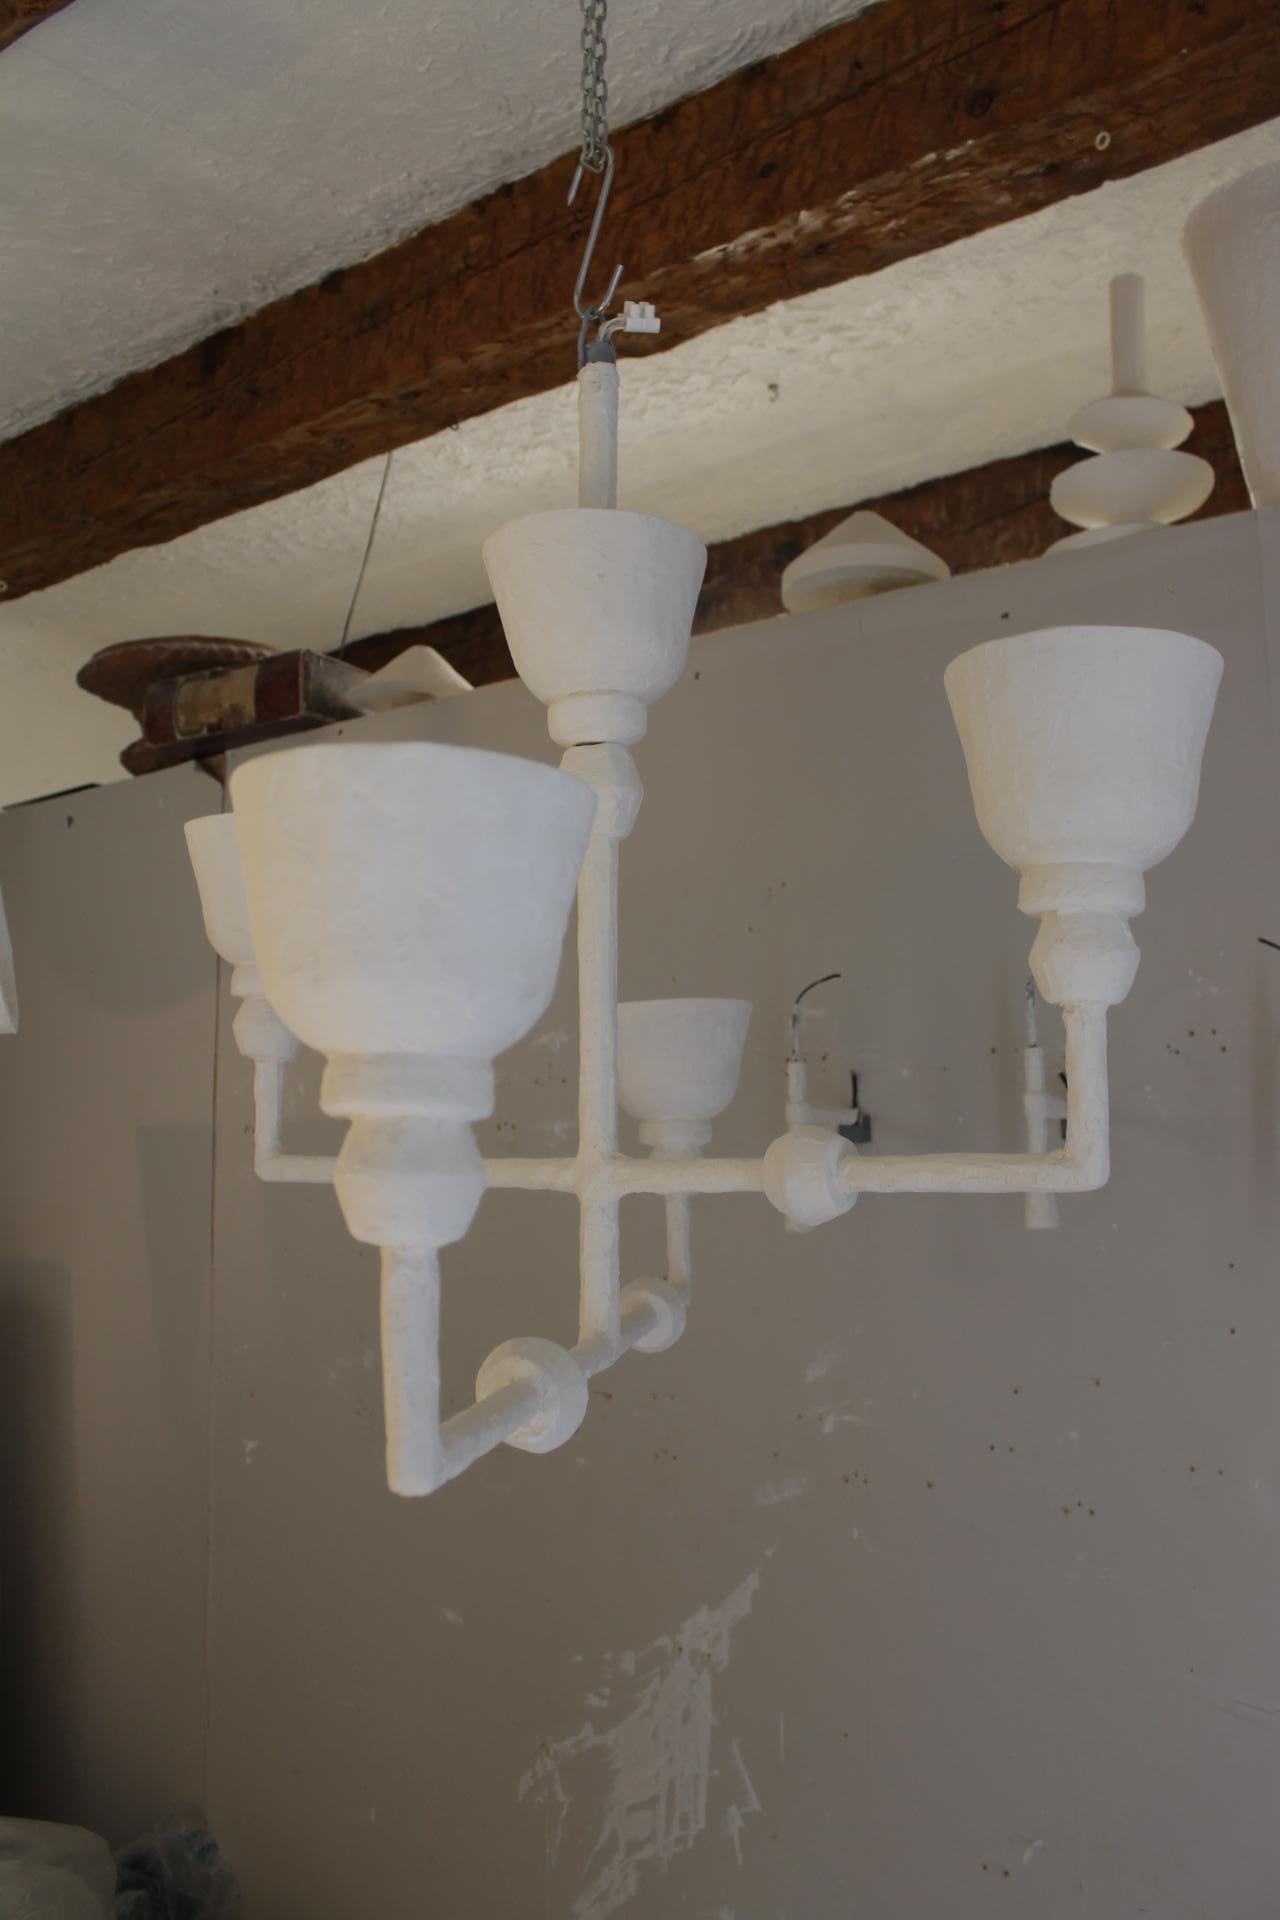 Gipslampe im Stil von Giacometti
Besteht aus vier Zweigen.
Die Luminaire ist elektrifiziert und funktioniert.
Basis E 27